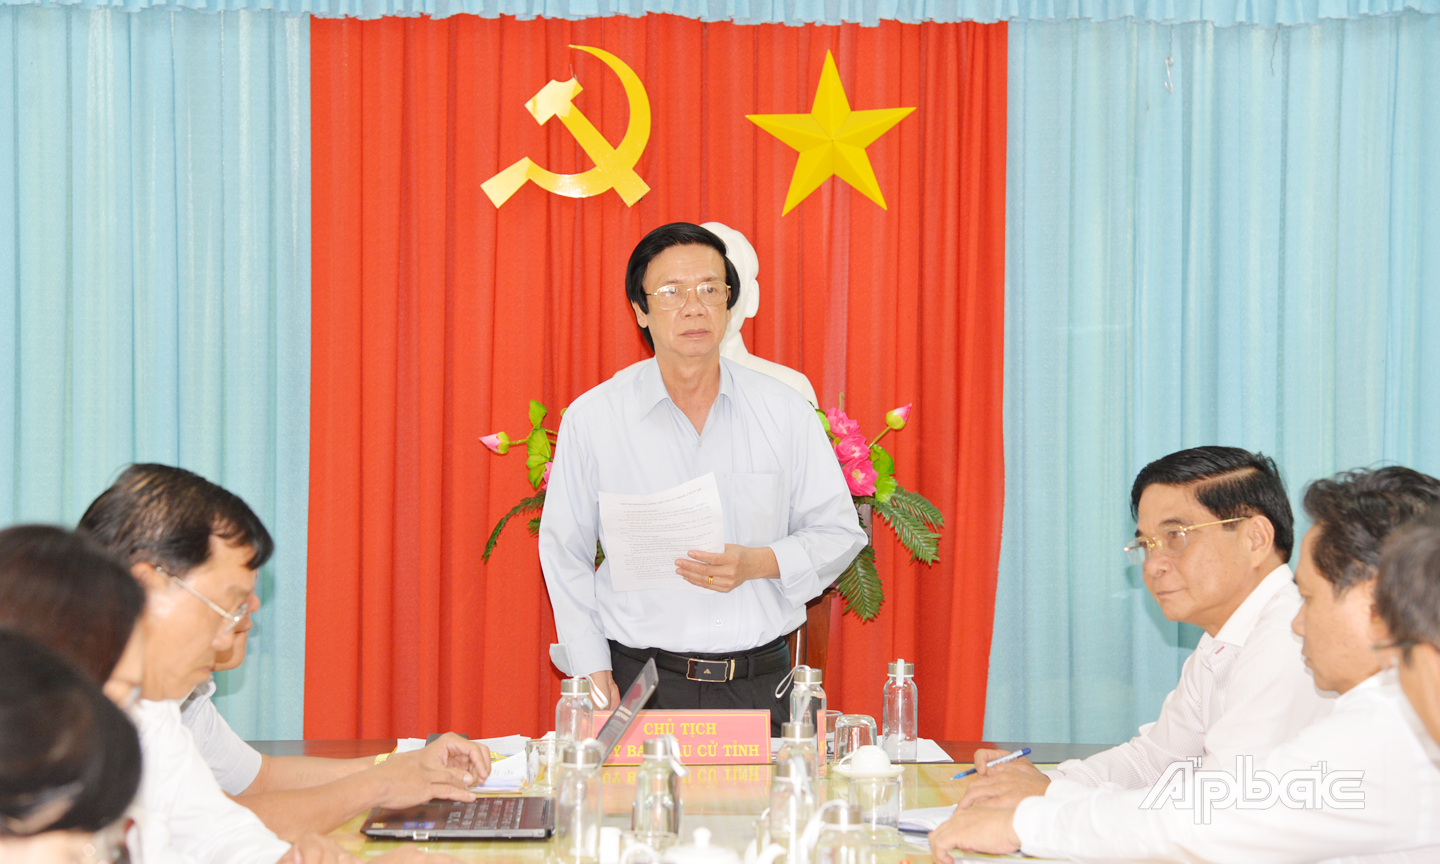 Đồng chí Nguyễn Văn Danh đánh giá cao nỗ lực của thành viên ủy ban bầu cử các cấp trong tỉnh, thời gian qua đã nỗ lực thực hiện tốt công tác chuẩn bị bầu cử theo đúng tiến độ và quy định